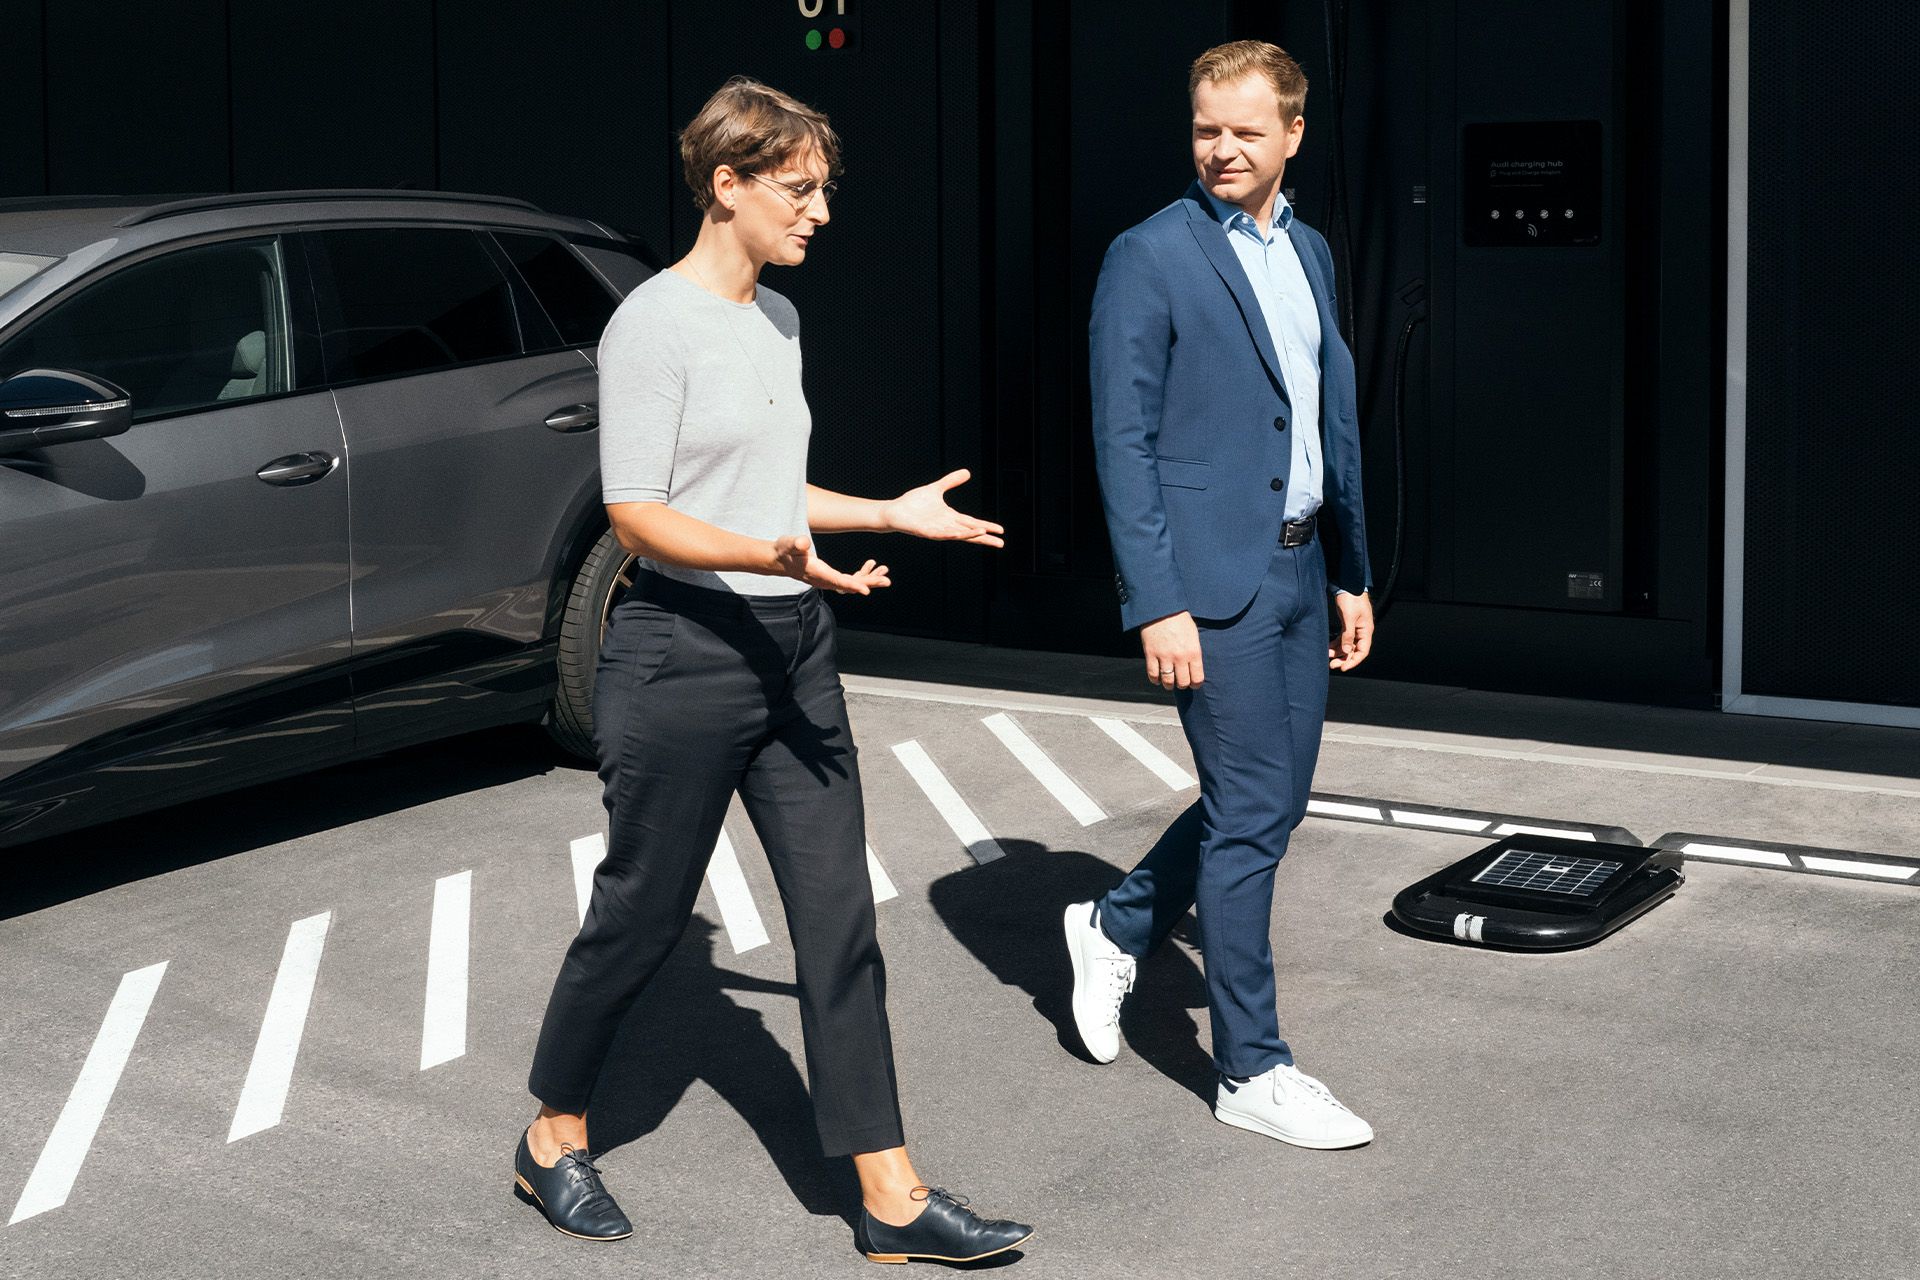 Nachhaltigkeitsexpert_innen Dr. Johanna Klewitz und Malte Vömel gehen über den Parkplatz vor dem Audi charging hub in Nürnberg.